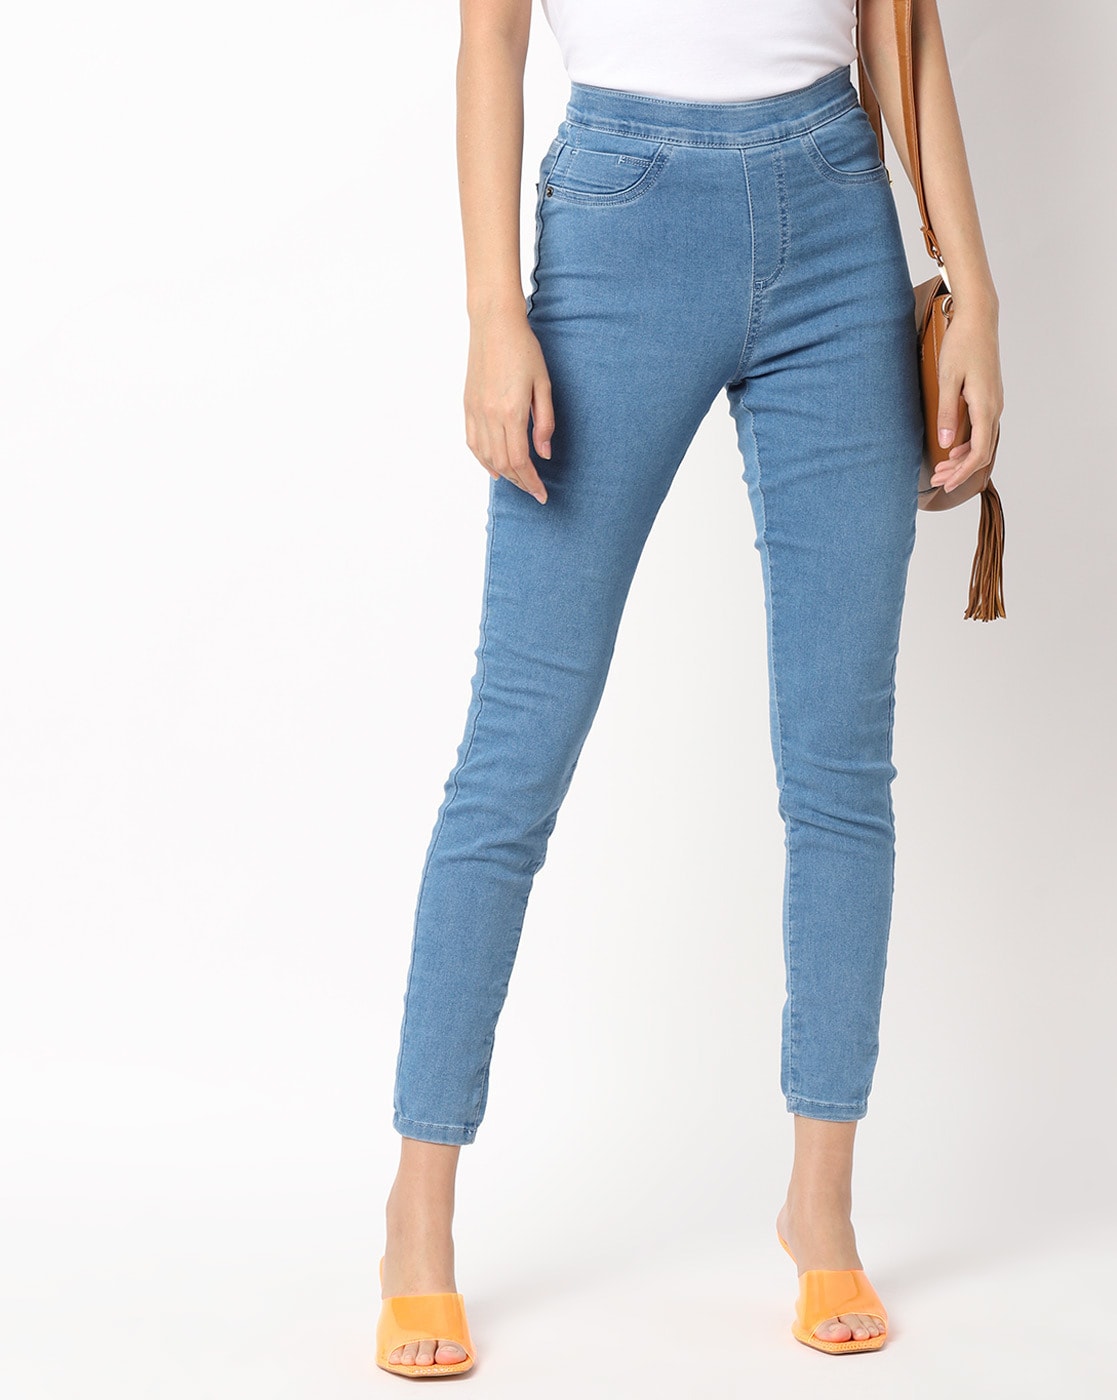 Bewijzen onderdak Bungalow Buy Blue Jeans & Jeggings for Women by DNMX Online | Ajio.com